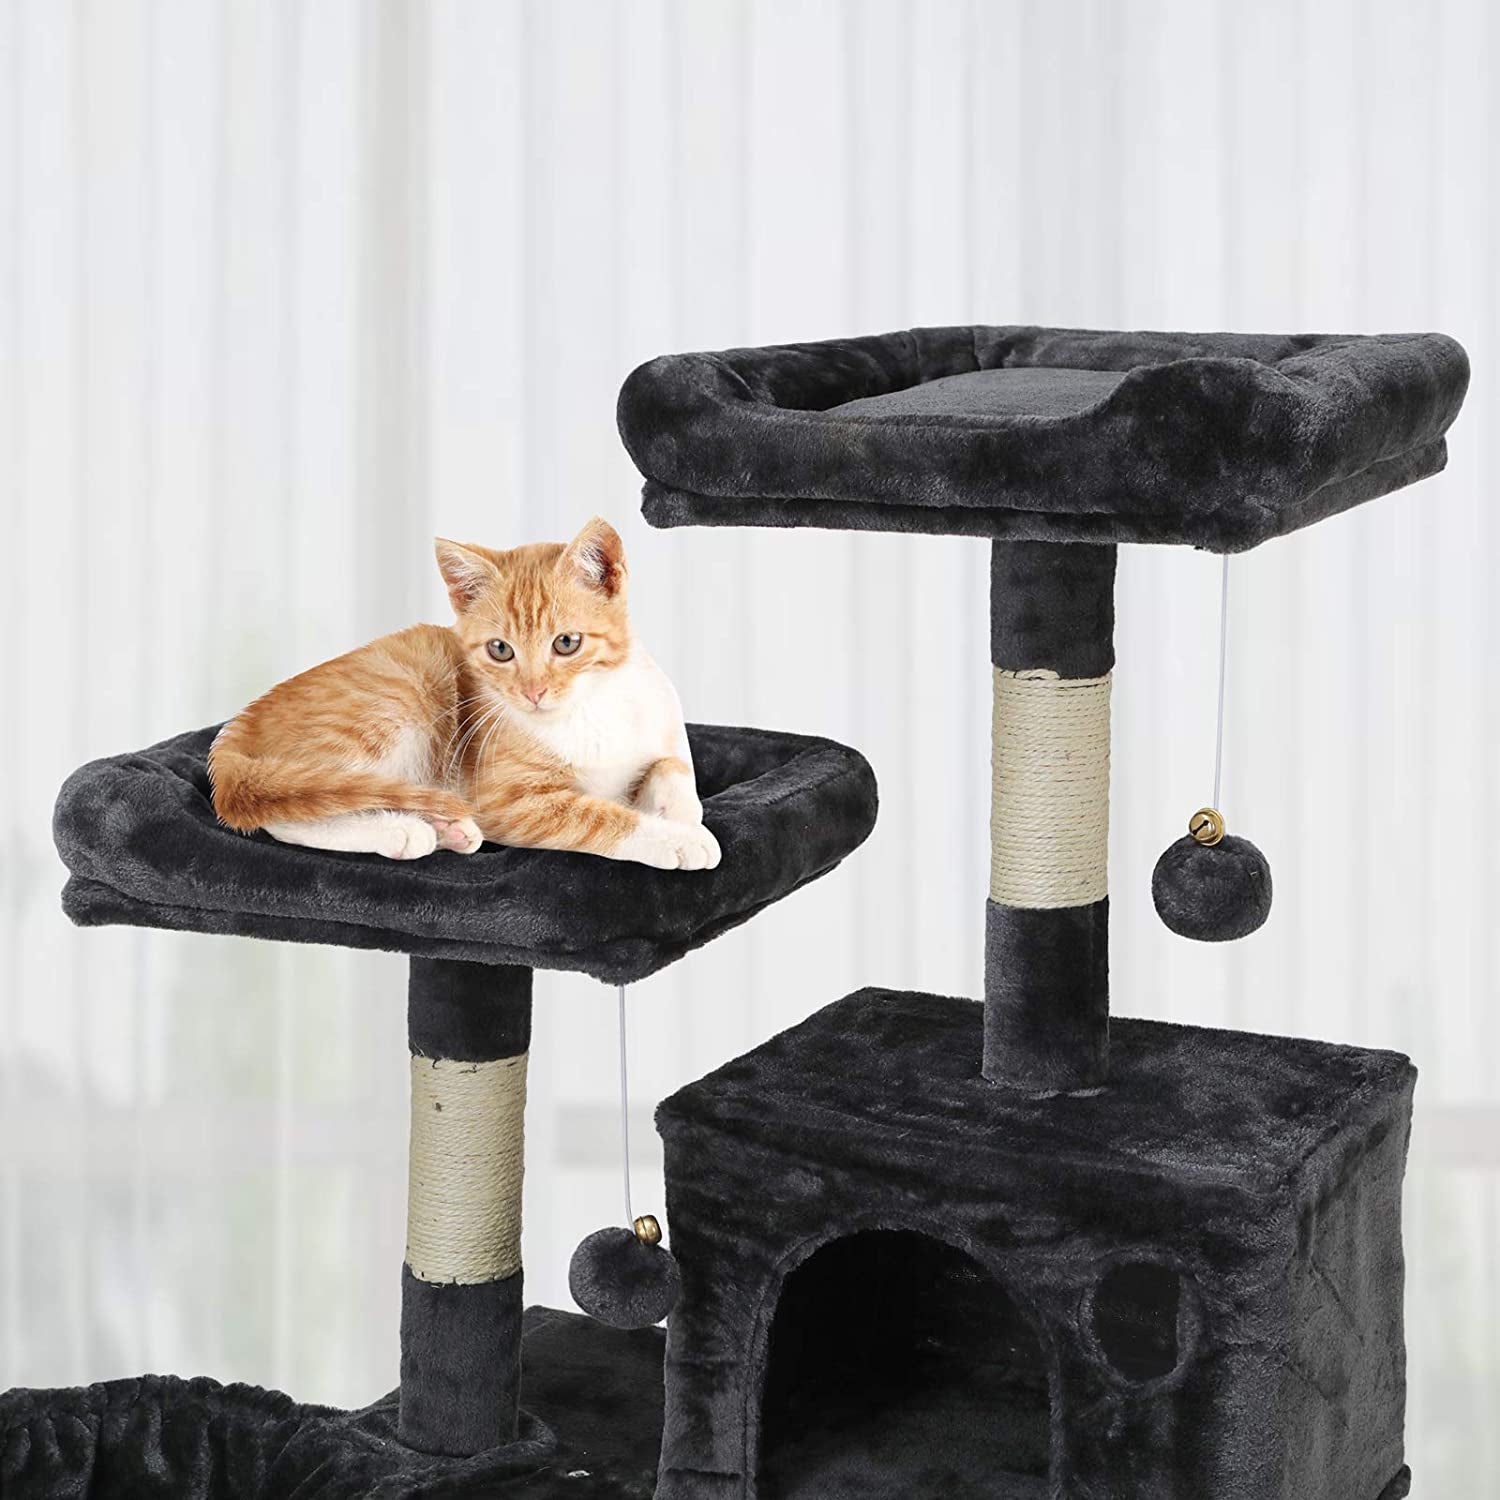 Large Indoor Cat Tree, Cat Tower, Cat Apartment, Cat Habitat, Multi-Level Cat Activity Center with Plush Balls